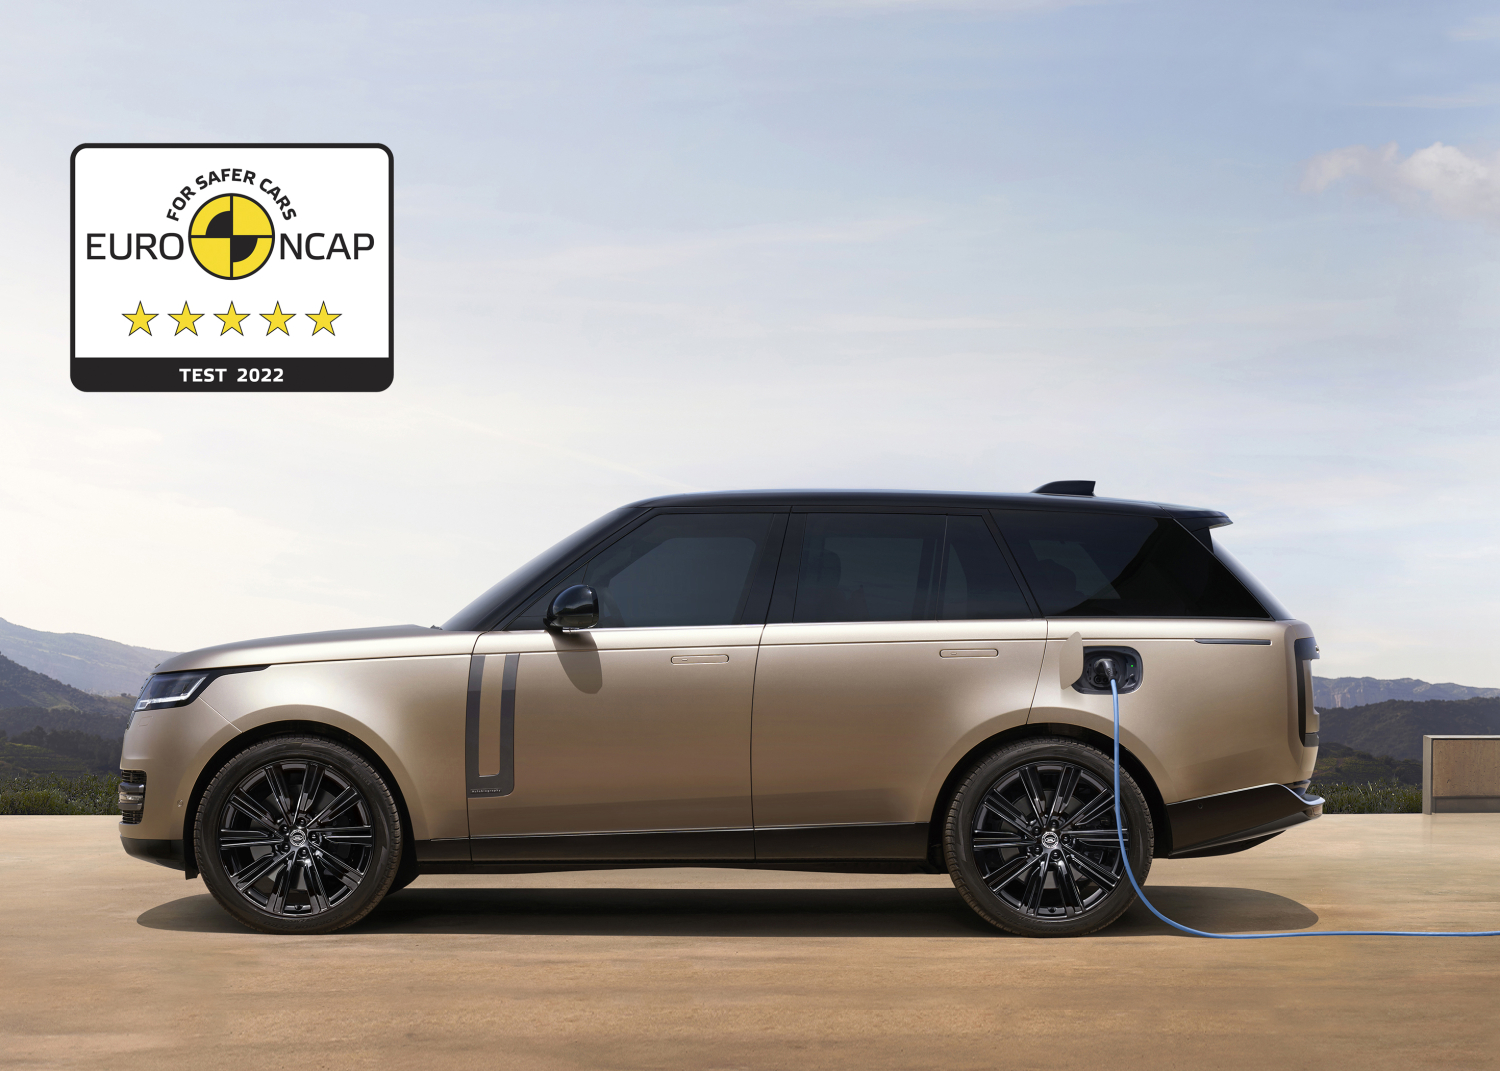 Range Rover y Range Rover Sport tienen 5 estrellas en la prueba de seguridad Euro NCAP